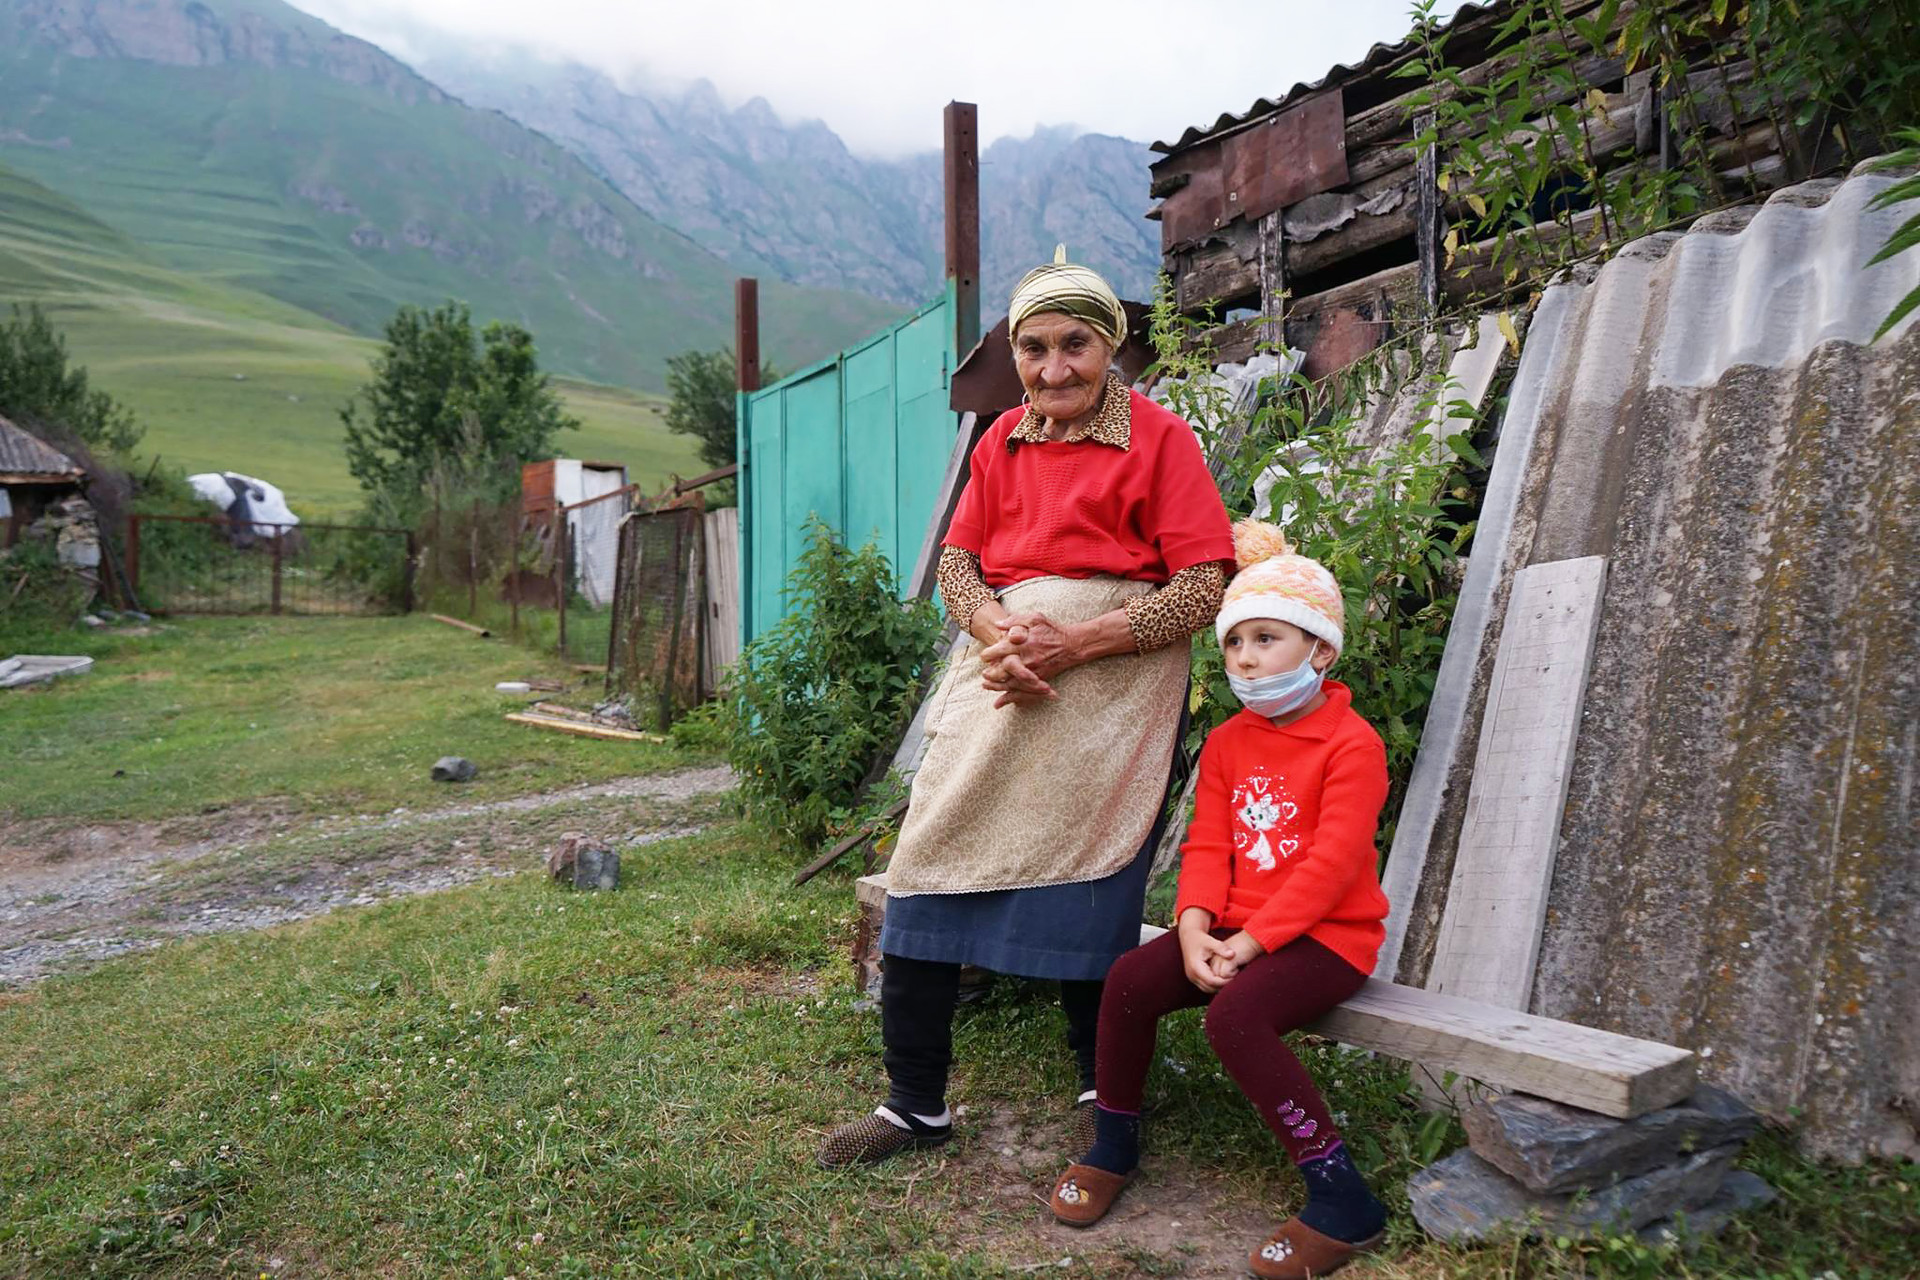 Zara in njena pravnukinja Jessica živita v majhnem zaselku Mairamikau v kotlini Karmadon v Severni Osetiji-Alaniji, Rusija. Zara živi tukaj že vse življenje in je zelo srečna. Kavkaz velja za regijo z največjo koncentracijo ljudi, ki so dočakali 100 let življenja.